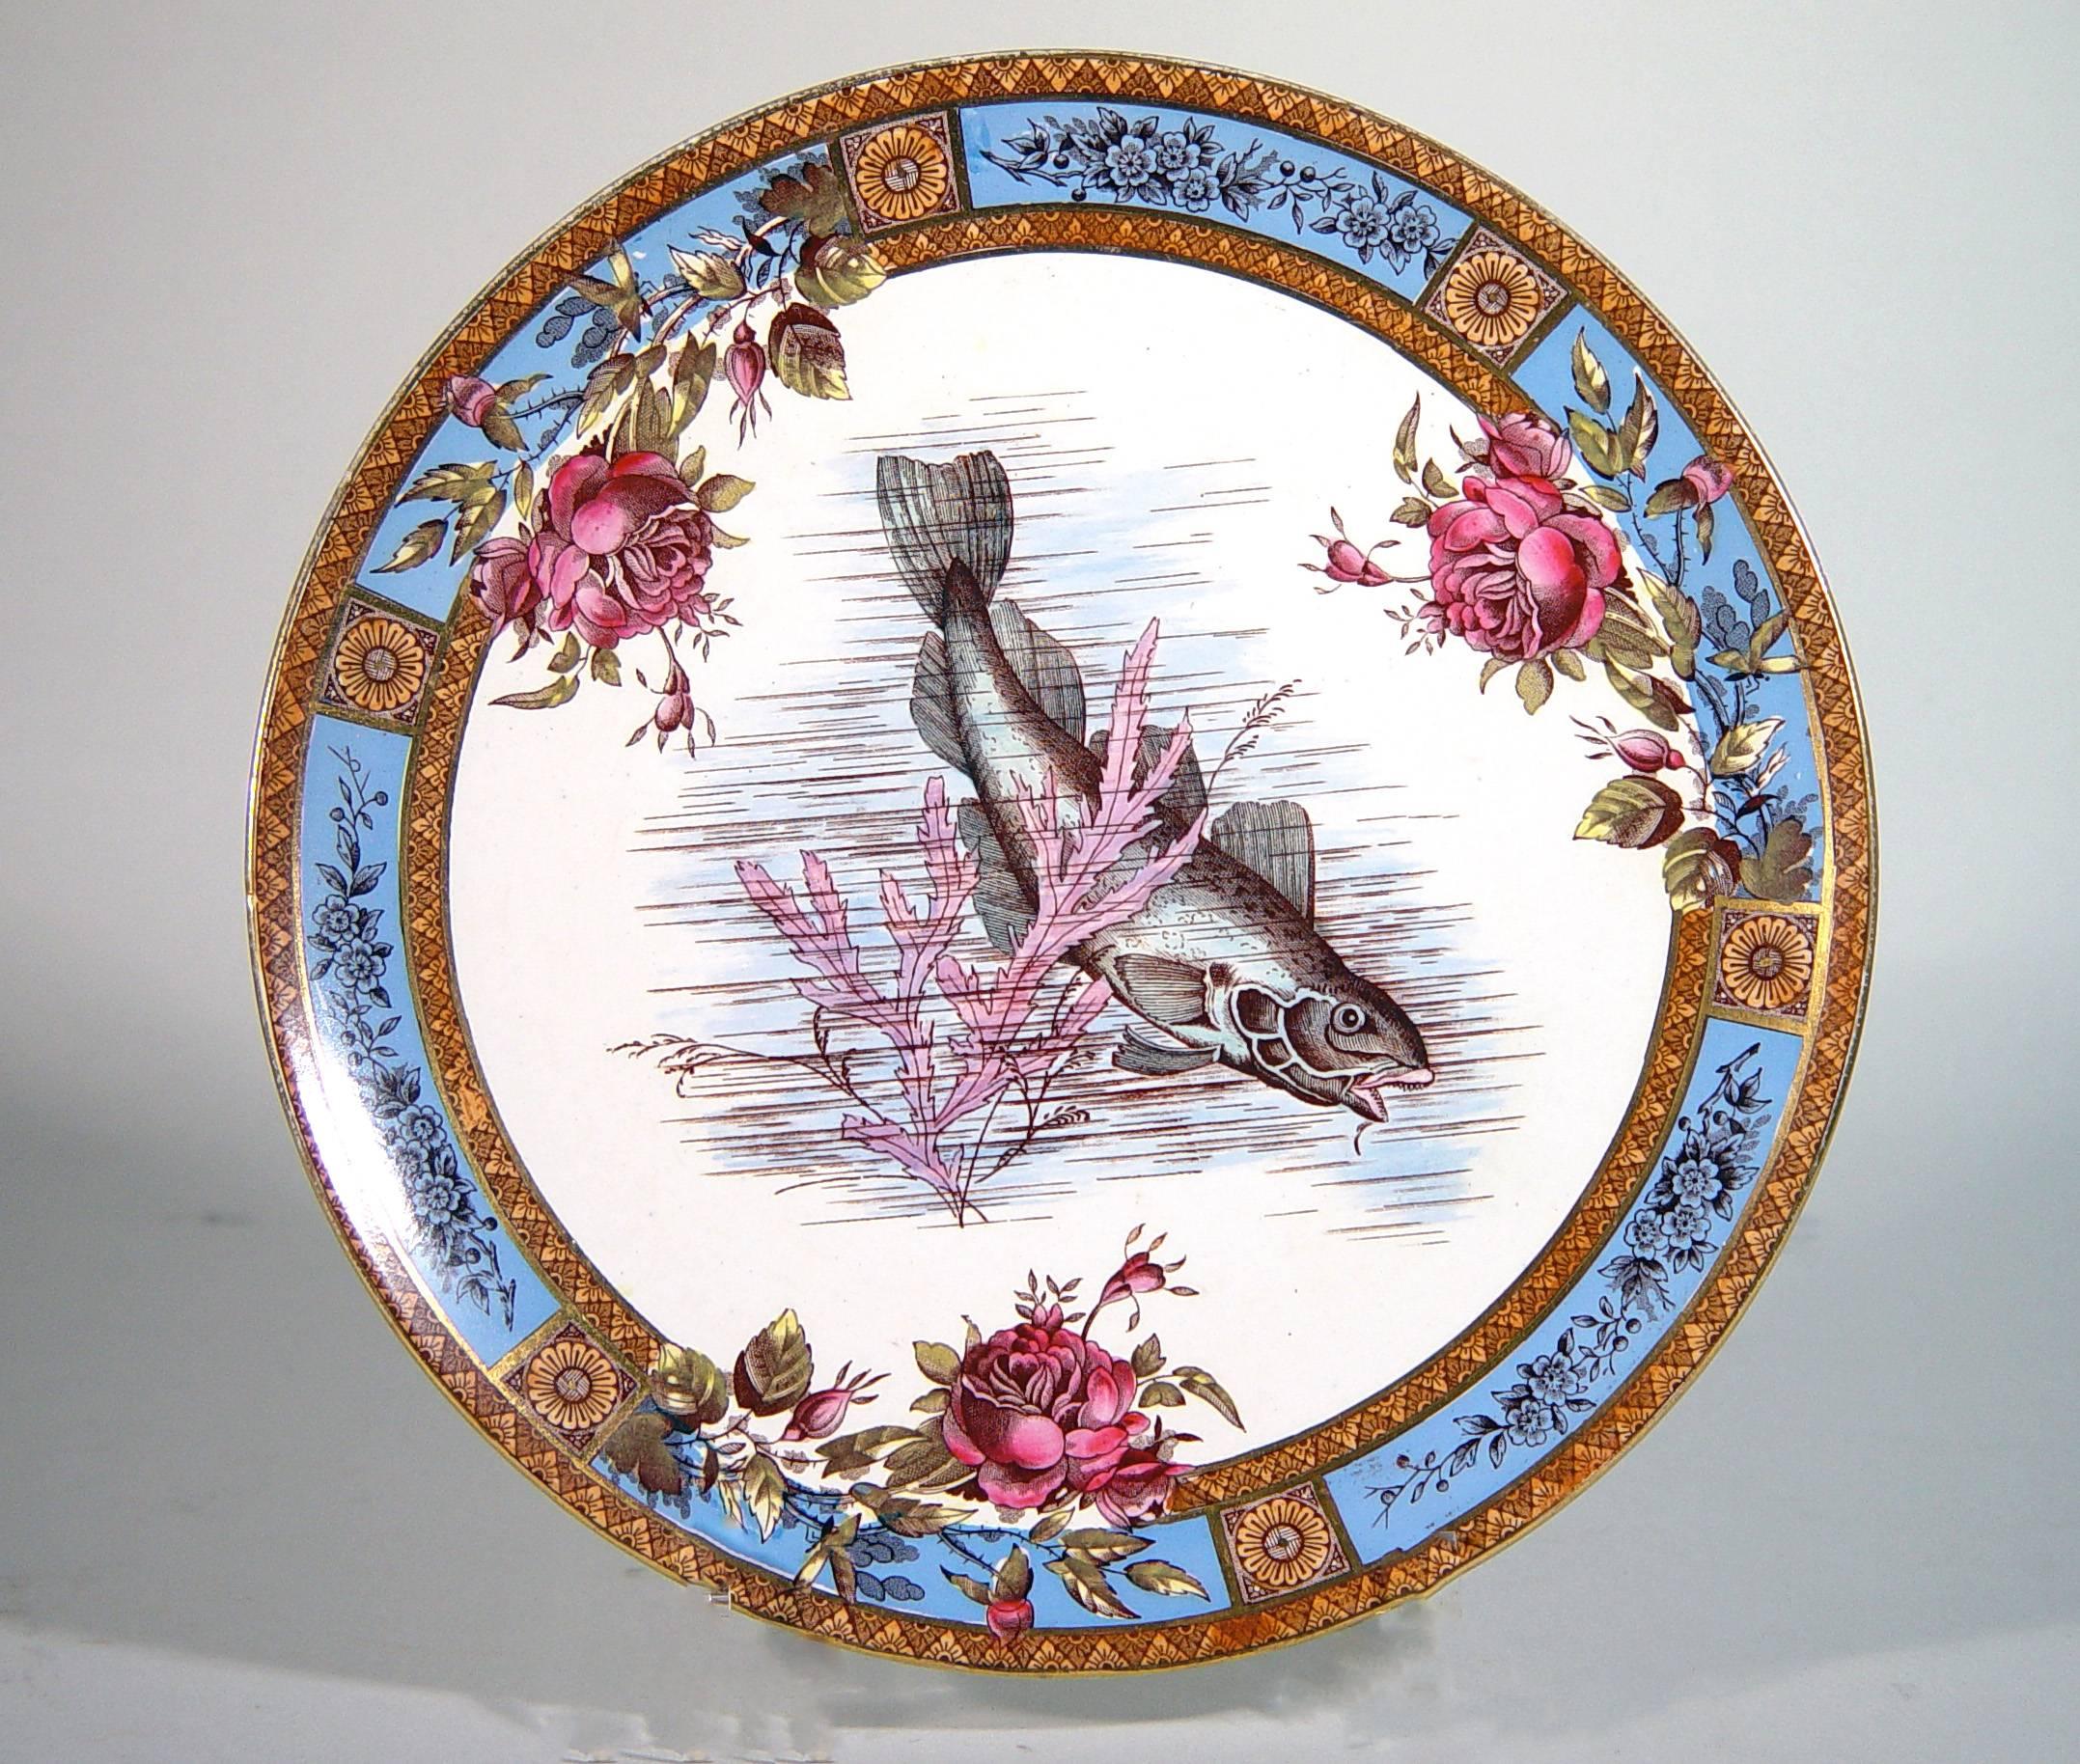 Les assiettes en poterie sont décorées d'un motif imprimé représentant un poisson au milieu d'algues dans une bordure de six panneaux bleu vif ornés d'une branche fleurie donnant naissance à des roses dans le motif central. Entre chaque panneau se